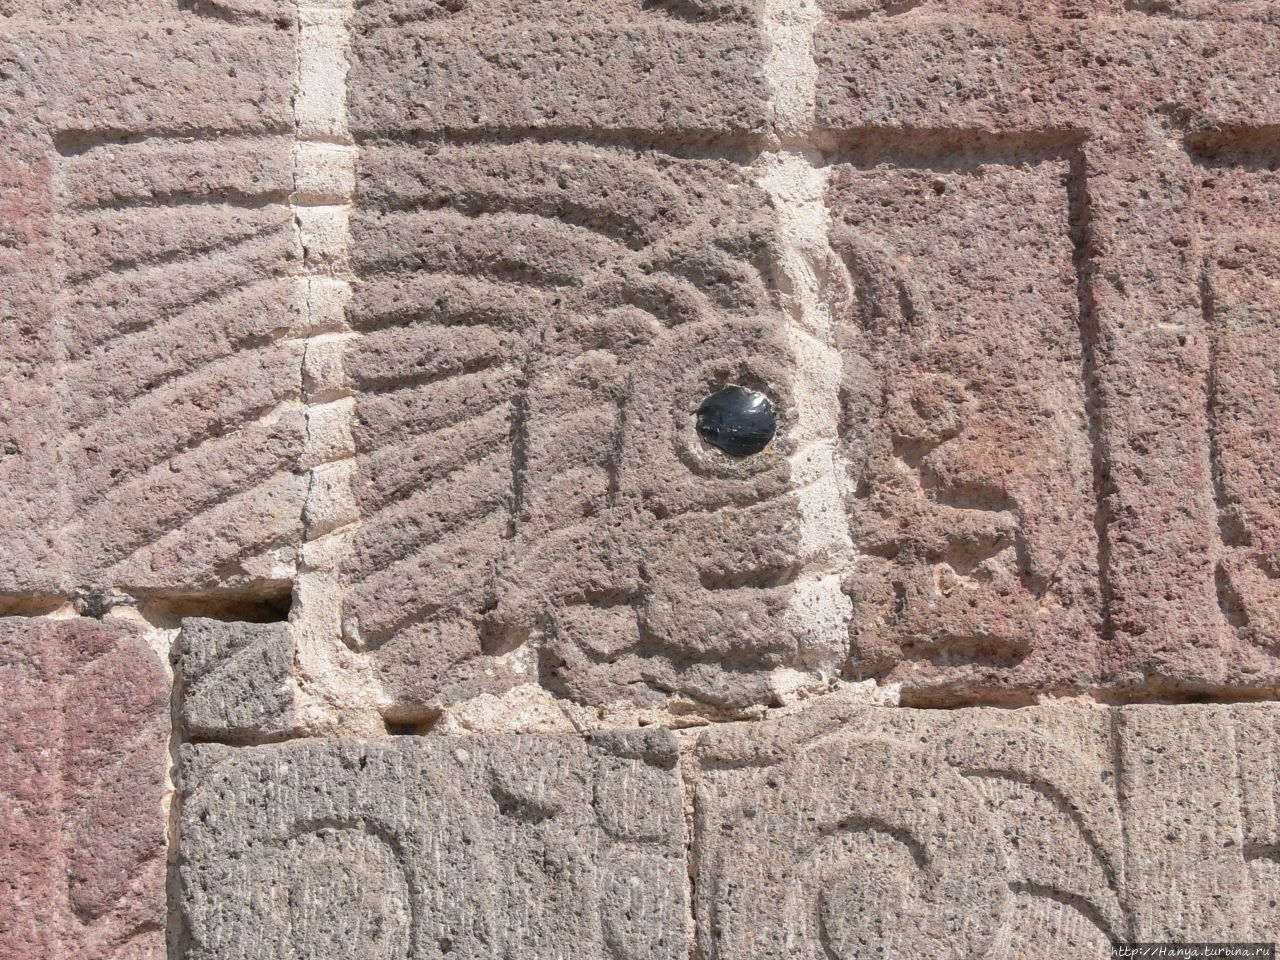 Птица кетцаль с обсидиановым глазом. Из интернета Теотиуакан пре-испанский город тольтеков, Мексика